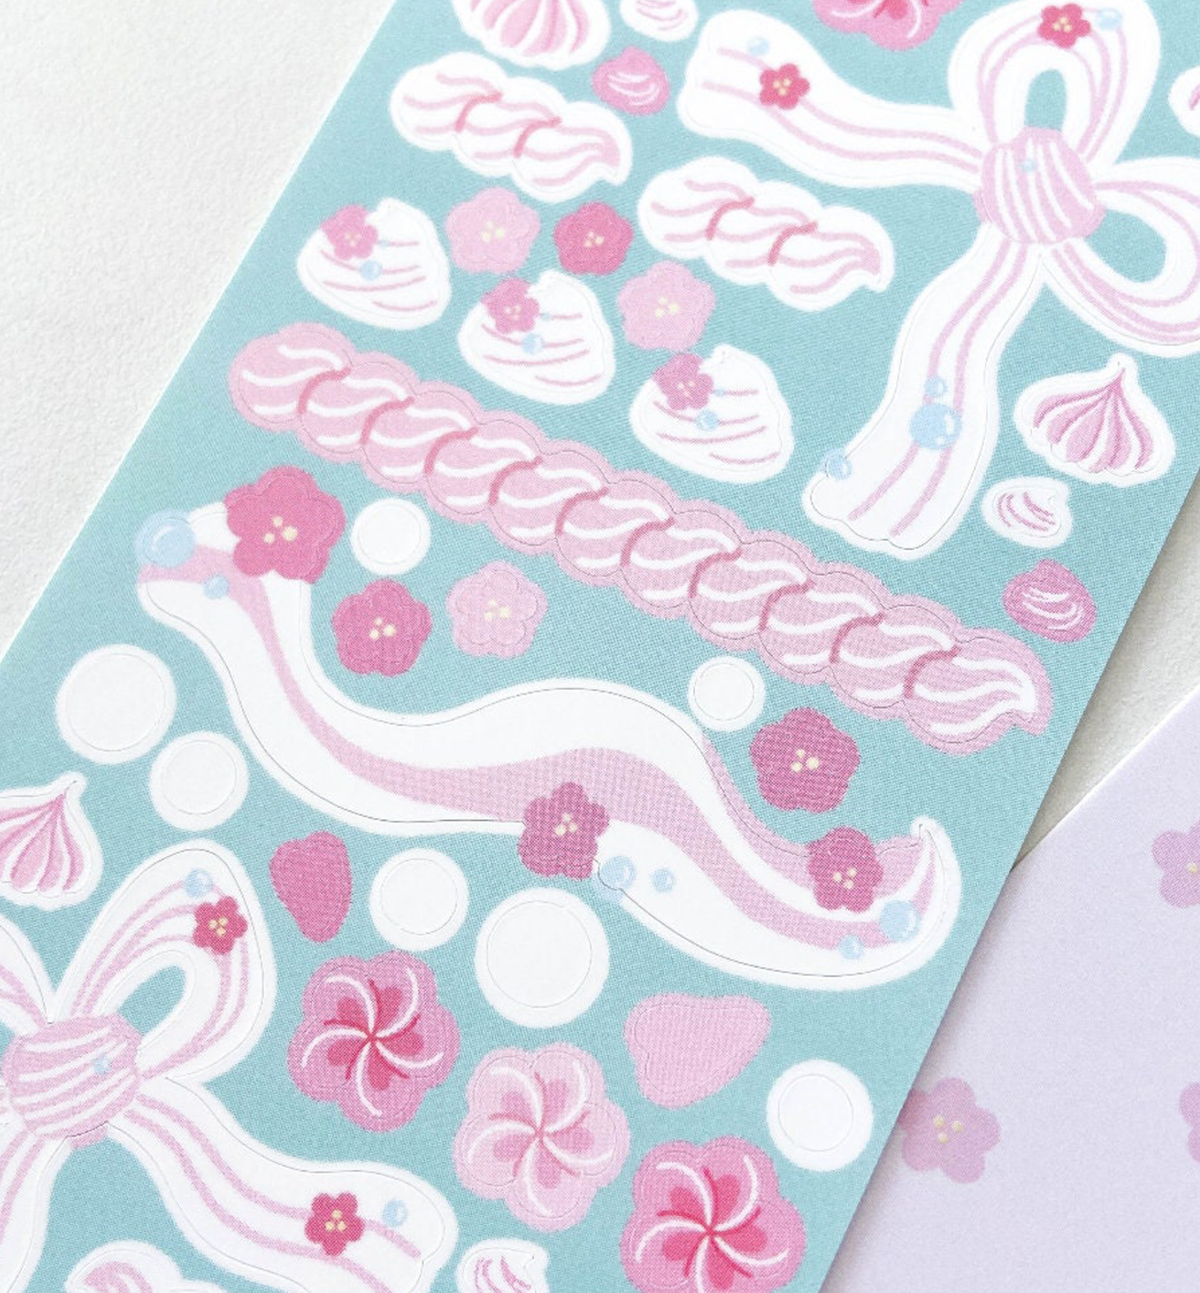 Cherry Blossom Cream Confetti Seal Sticker